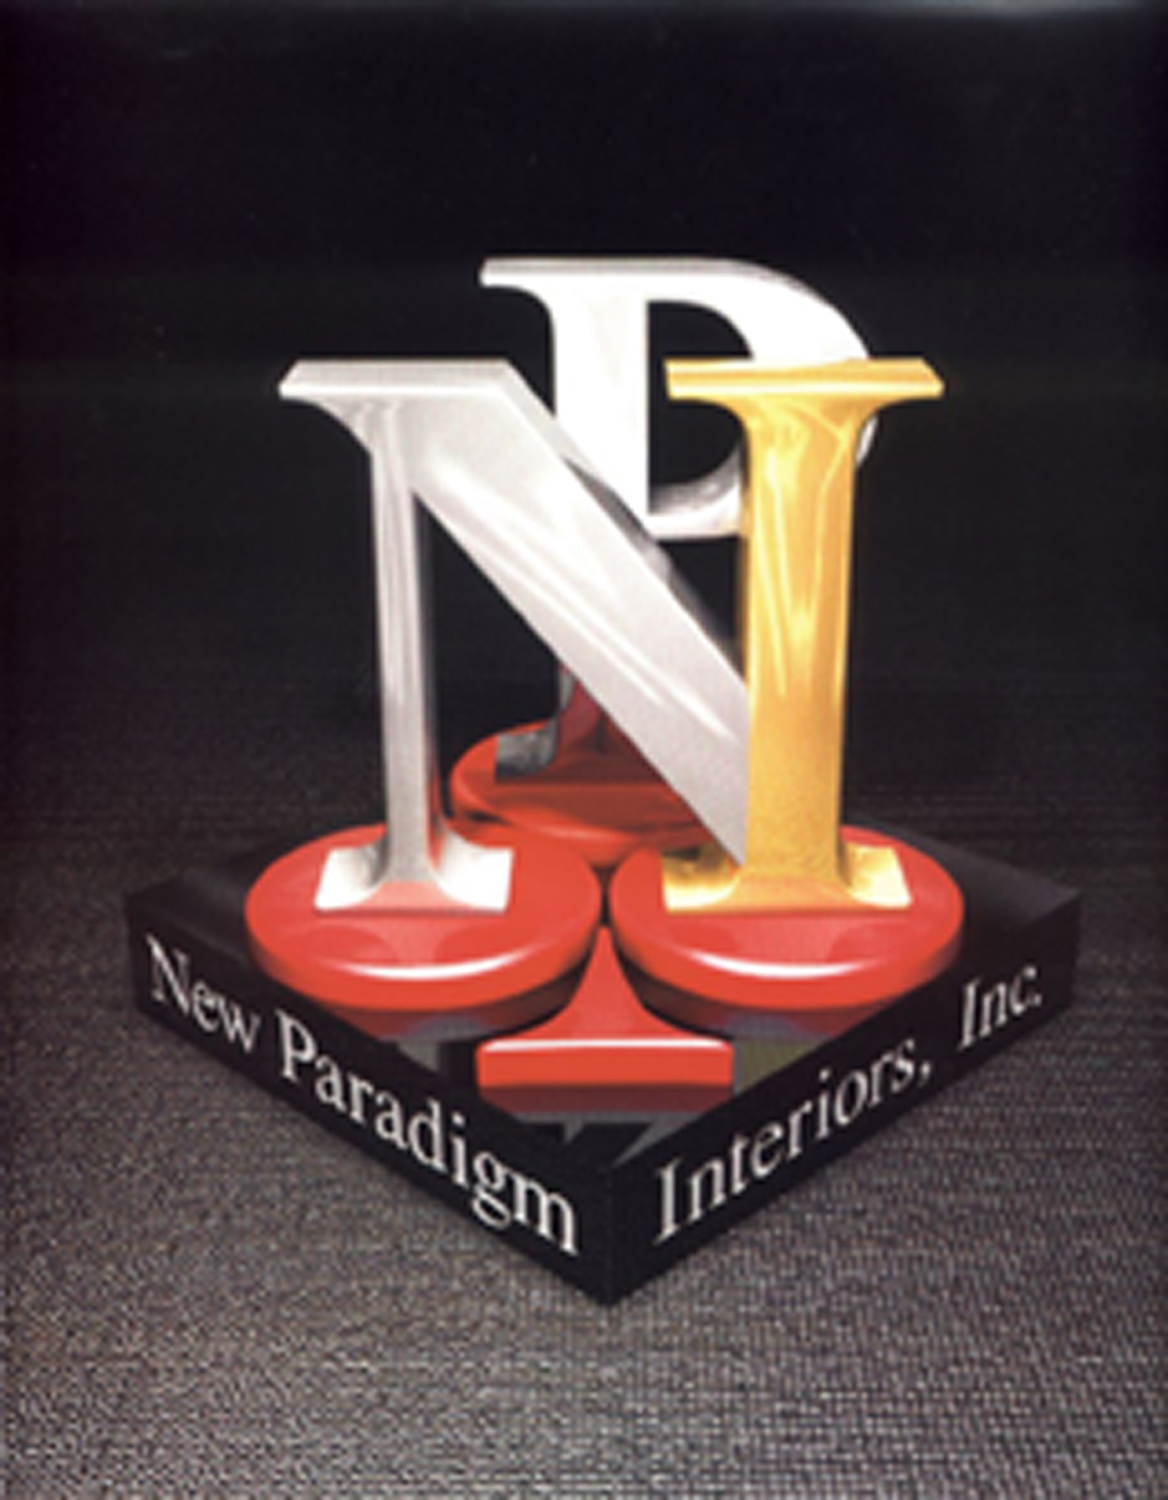 New Paradigm Interiors, Inc.